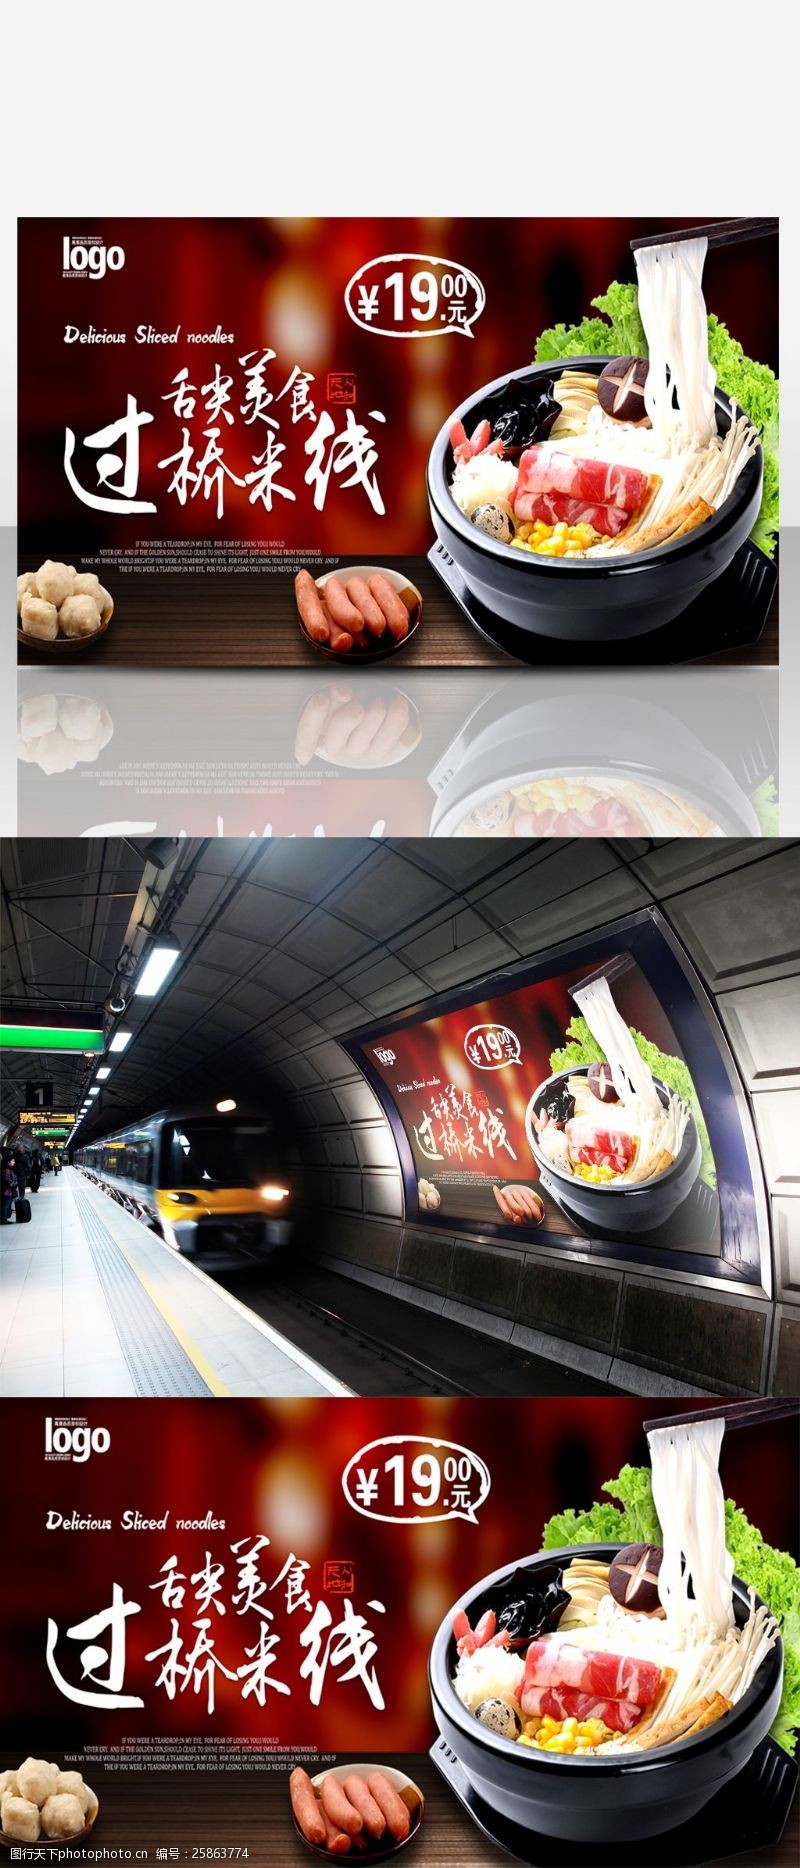 云南美食快餐店砂锅过桥米线美食海报广告